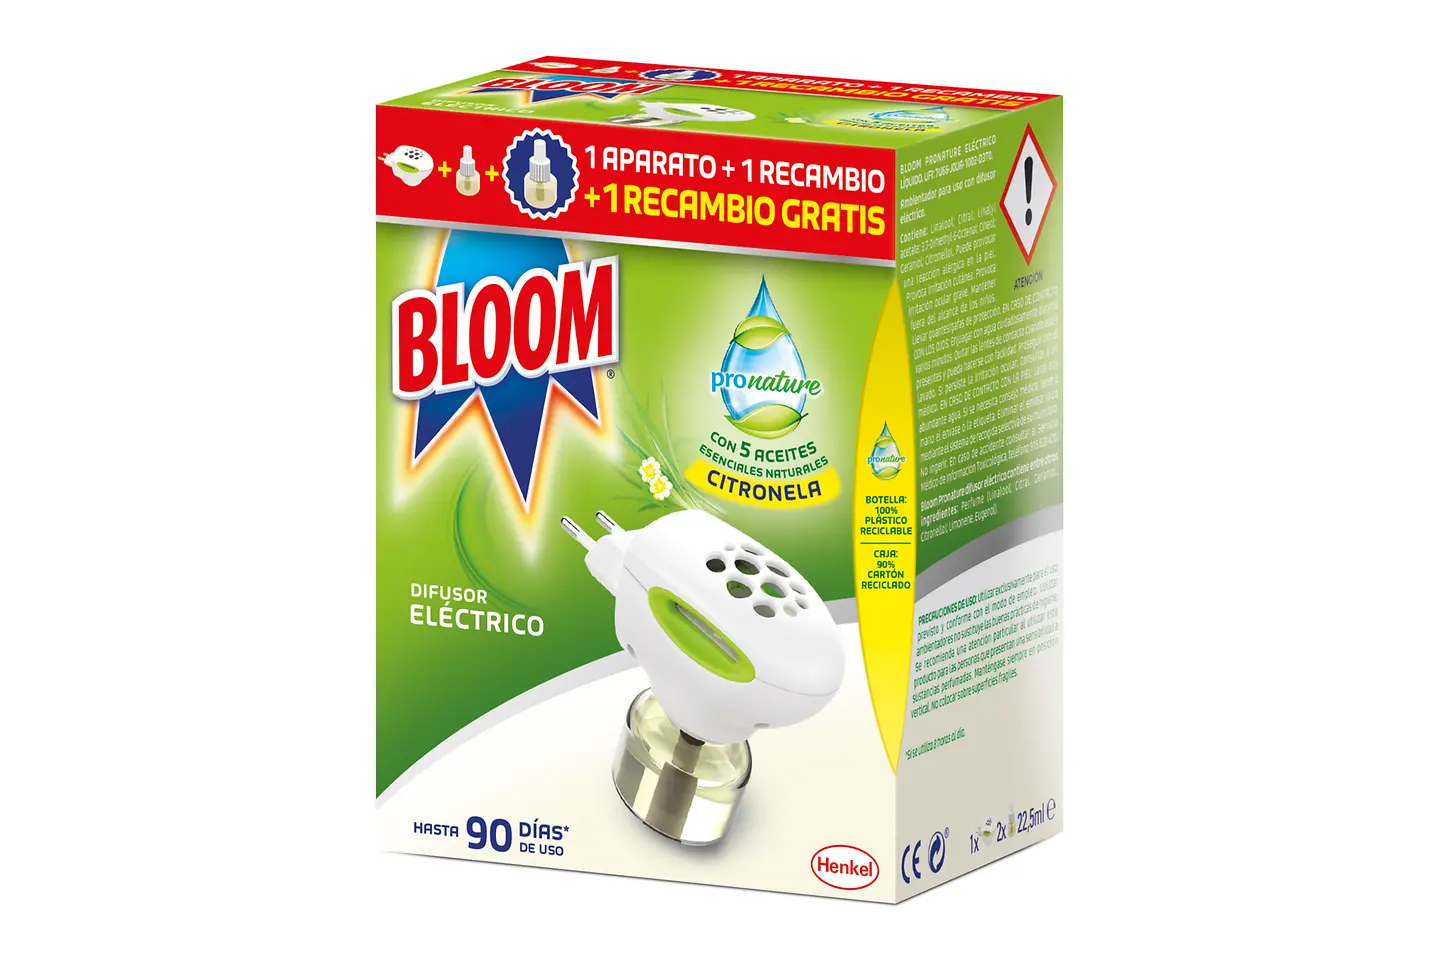 Nuevo difusor eléctrico Bloom ProNature, el difusor eléctrico con aceites esenciales